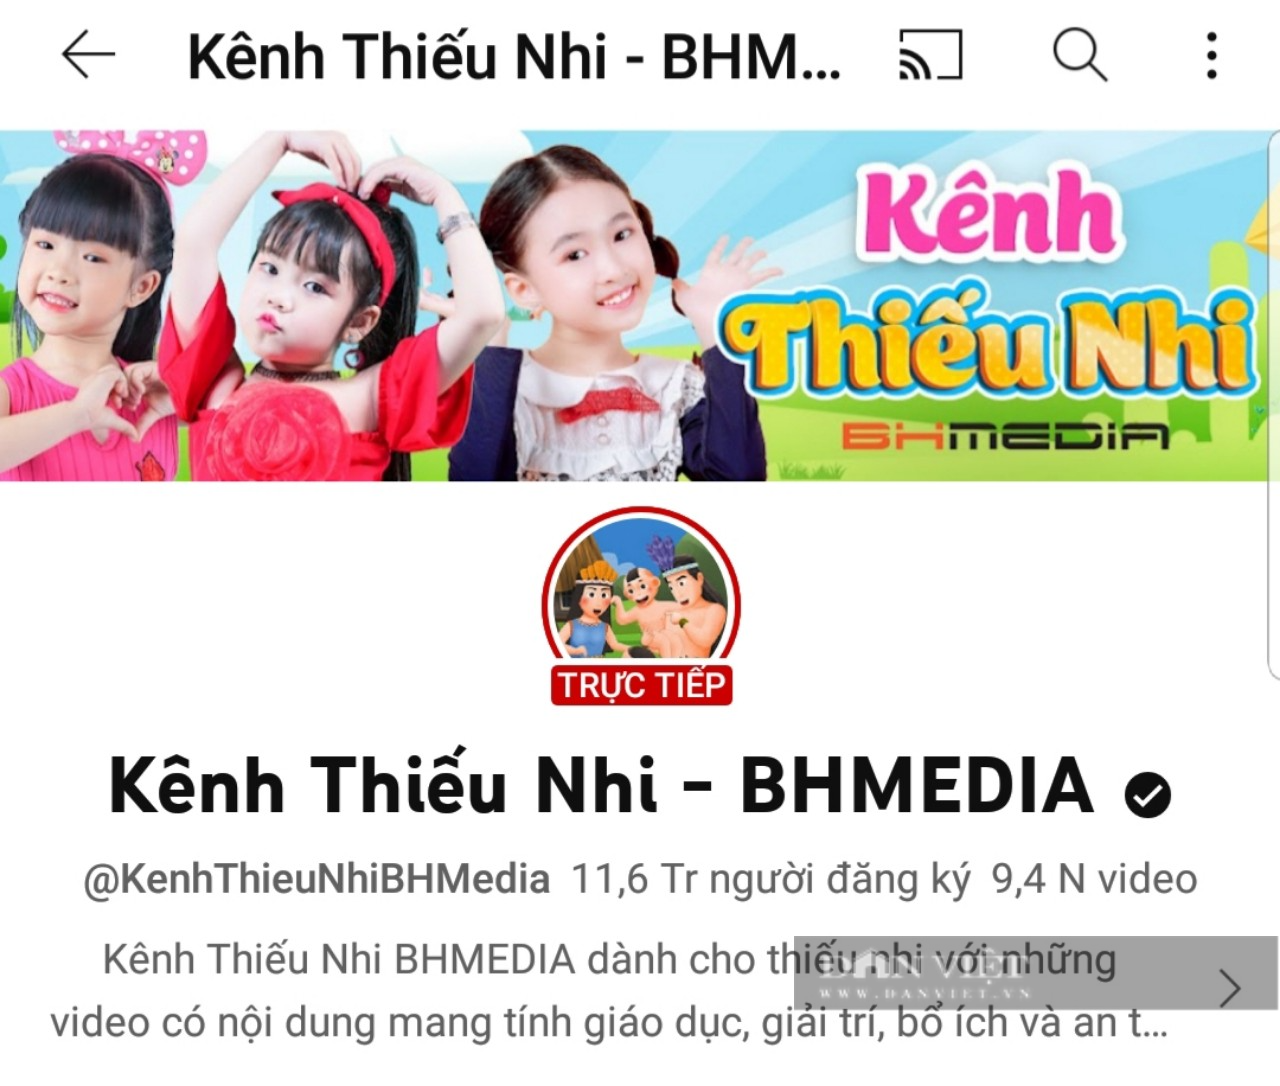 Chuyên làm video hoạt hình dành cho thiếu nhi, kênh BHMEDIA thu tiền khủng nhờ hơn 11,6 triệu người đăng ký trên youtube - Ảnh 1.